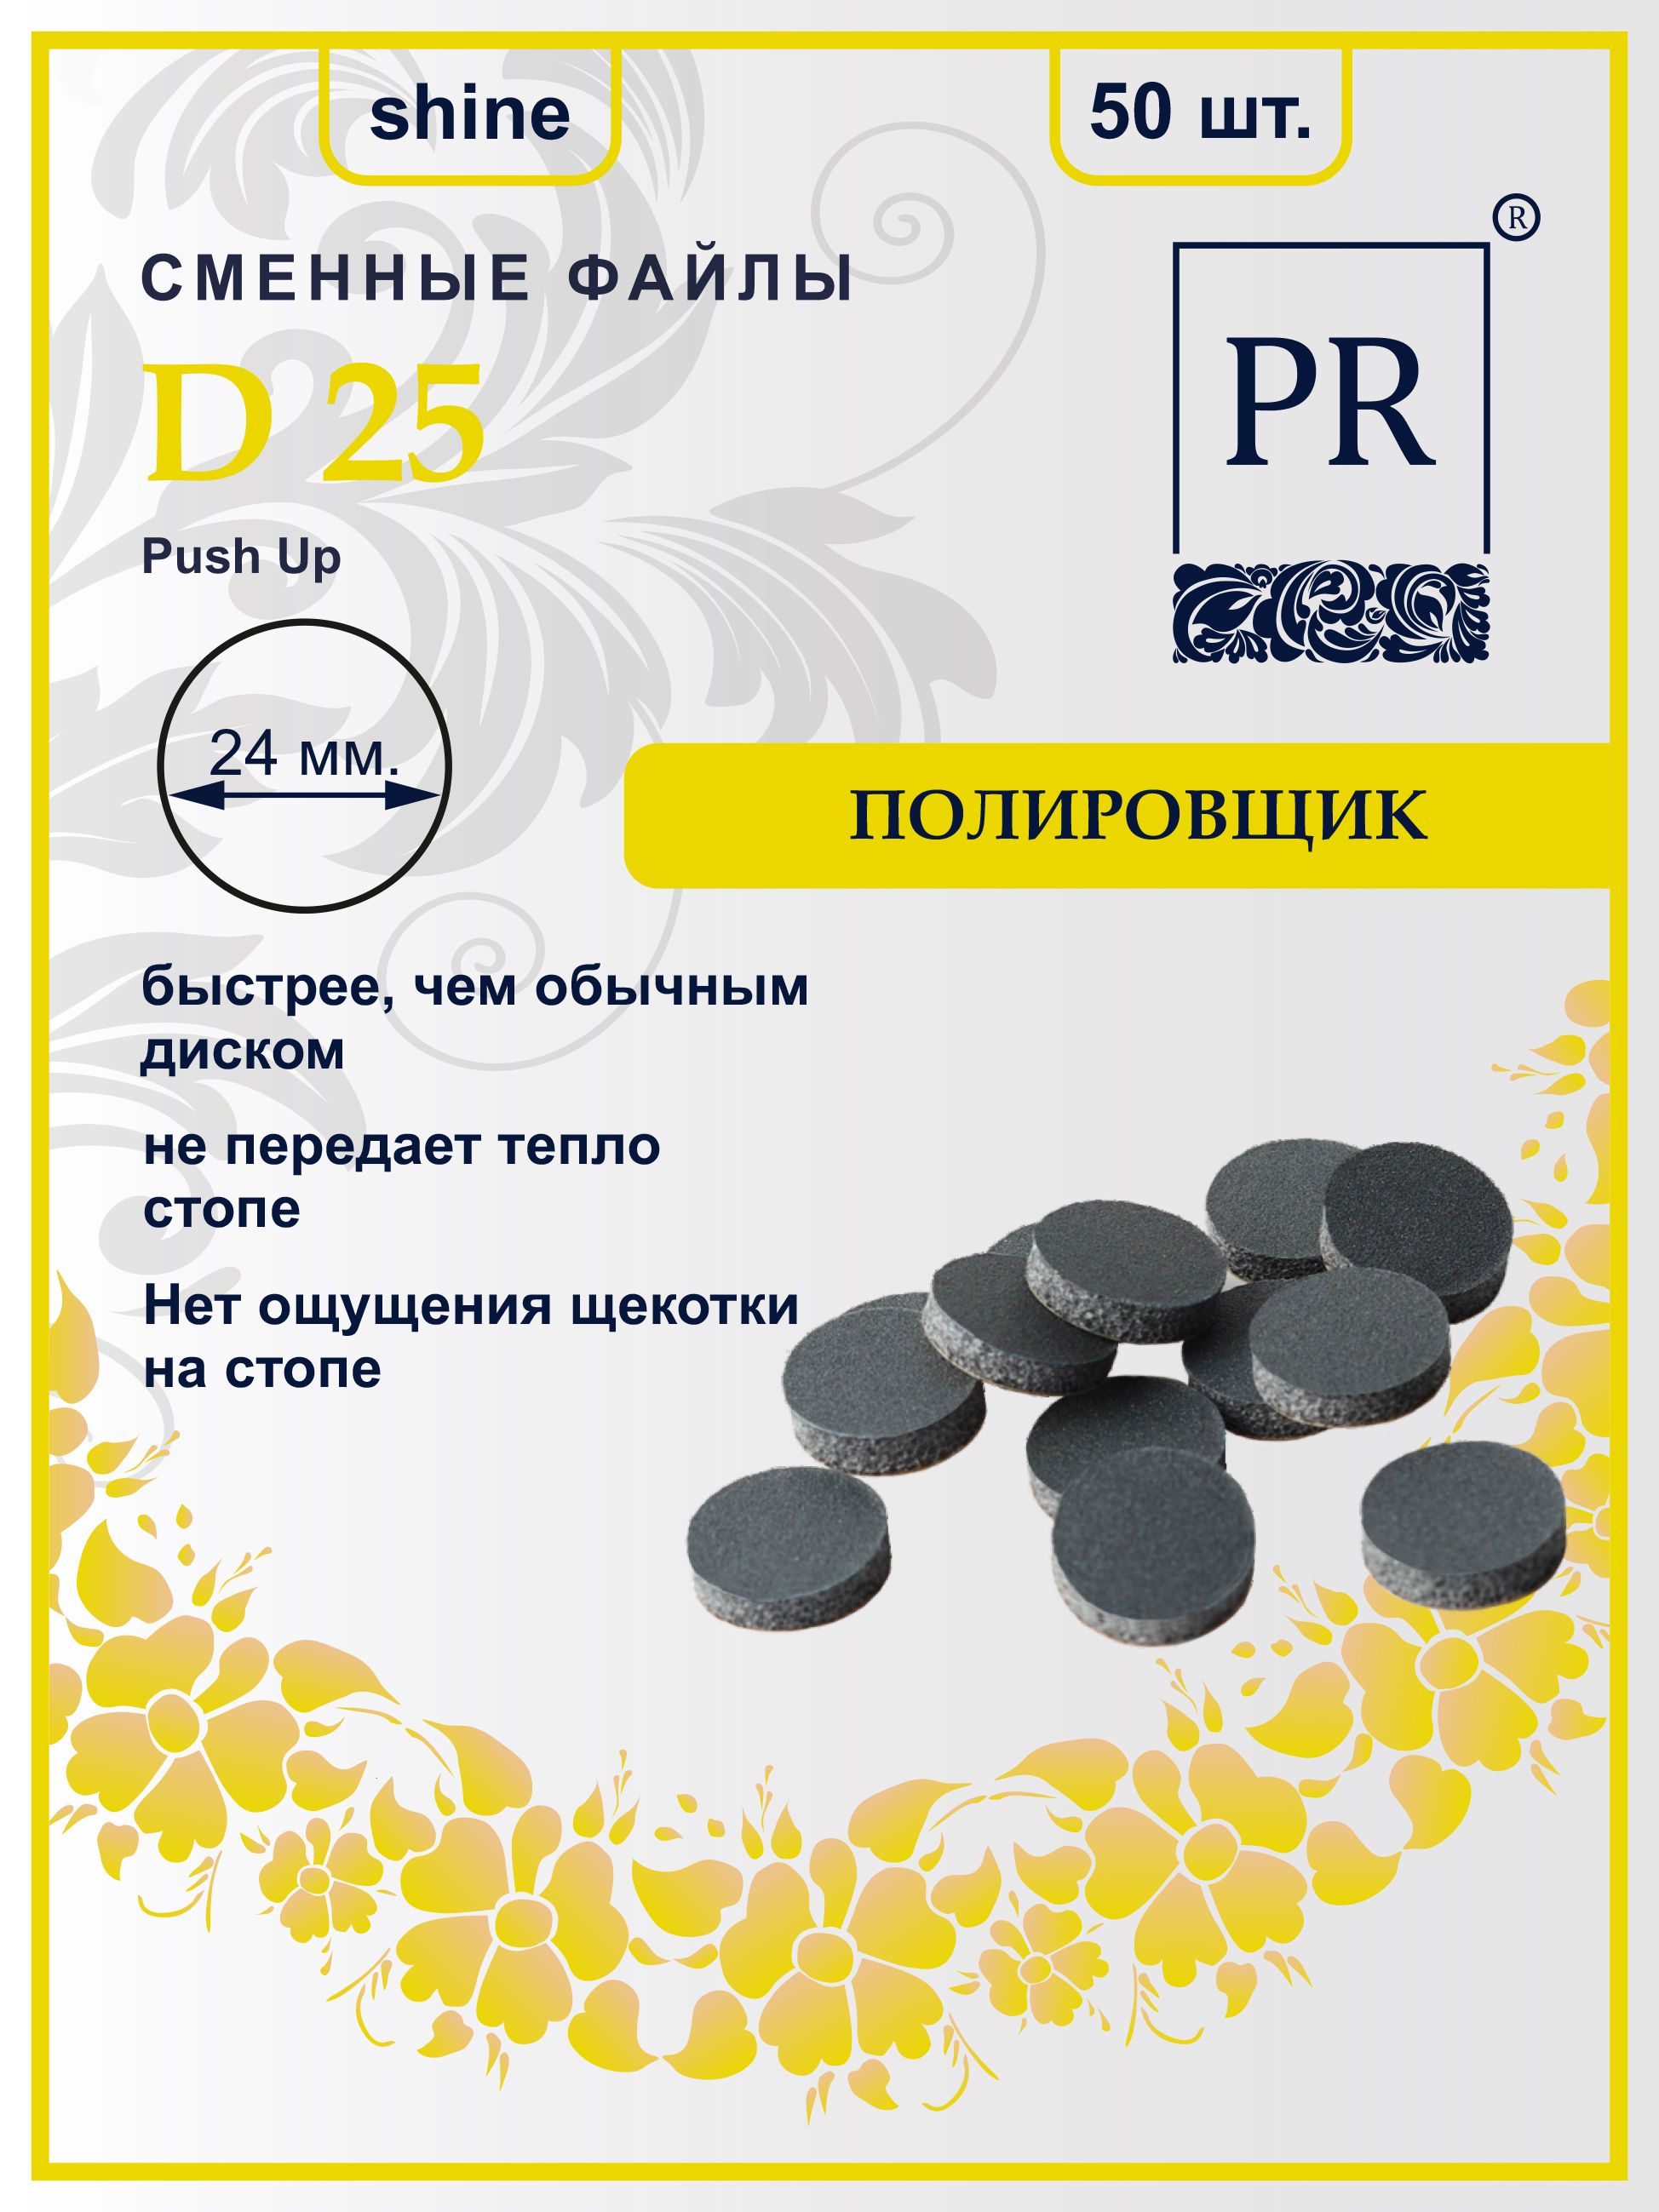 Сменные файлы Pilochki Russia диски Push Up Shine для полировки для диска L 50 штук для полировки дерева камня шлифовальные диски сетка наждачная бумага